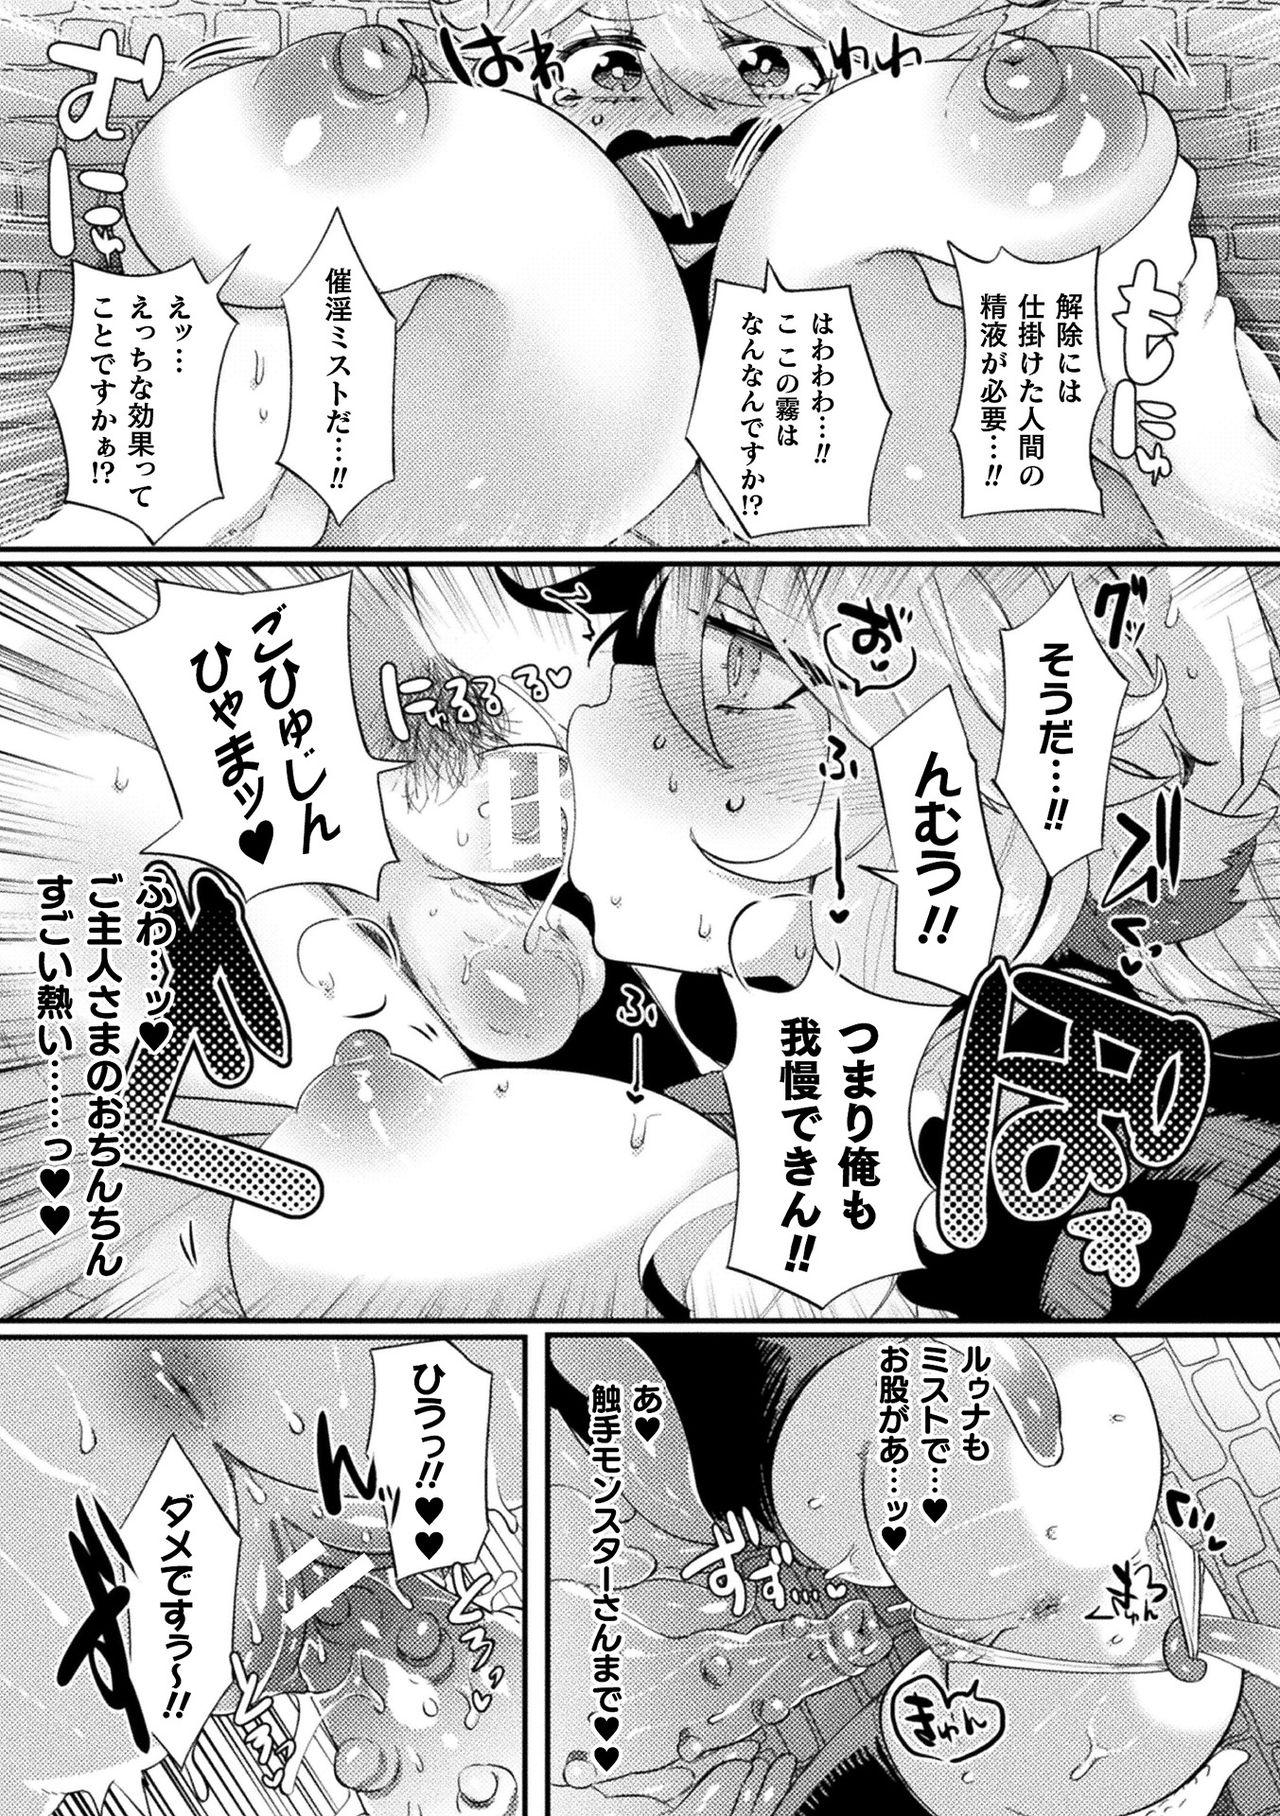 [Anthology] Bessatsu Comic Unreal Ponkotsu Fantasy Heroine H ~Doji o Funde Gyakuten Saretari Ero Trap ni Hamattari!?~ Vol. 1 [Digital] 11